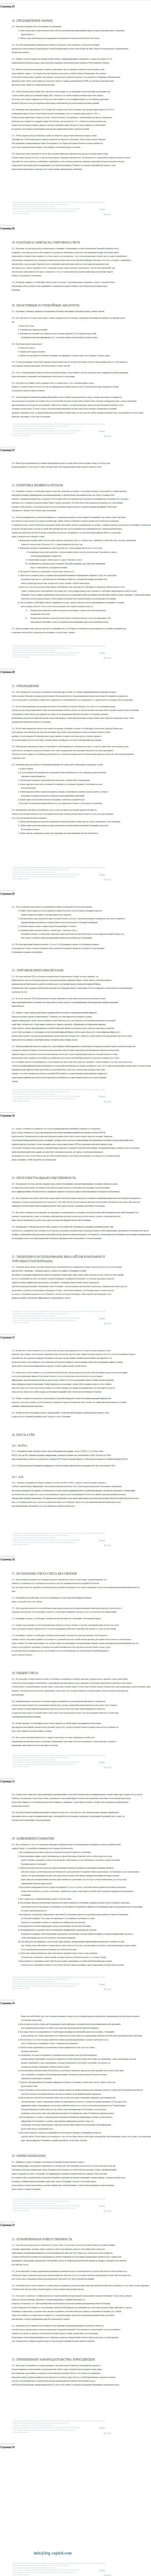 Часть 3 пользовательского соглашения дилингового центра BTGCapital